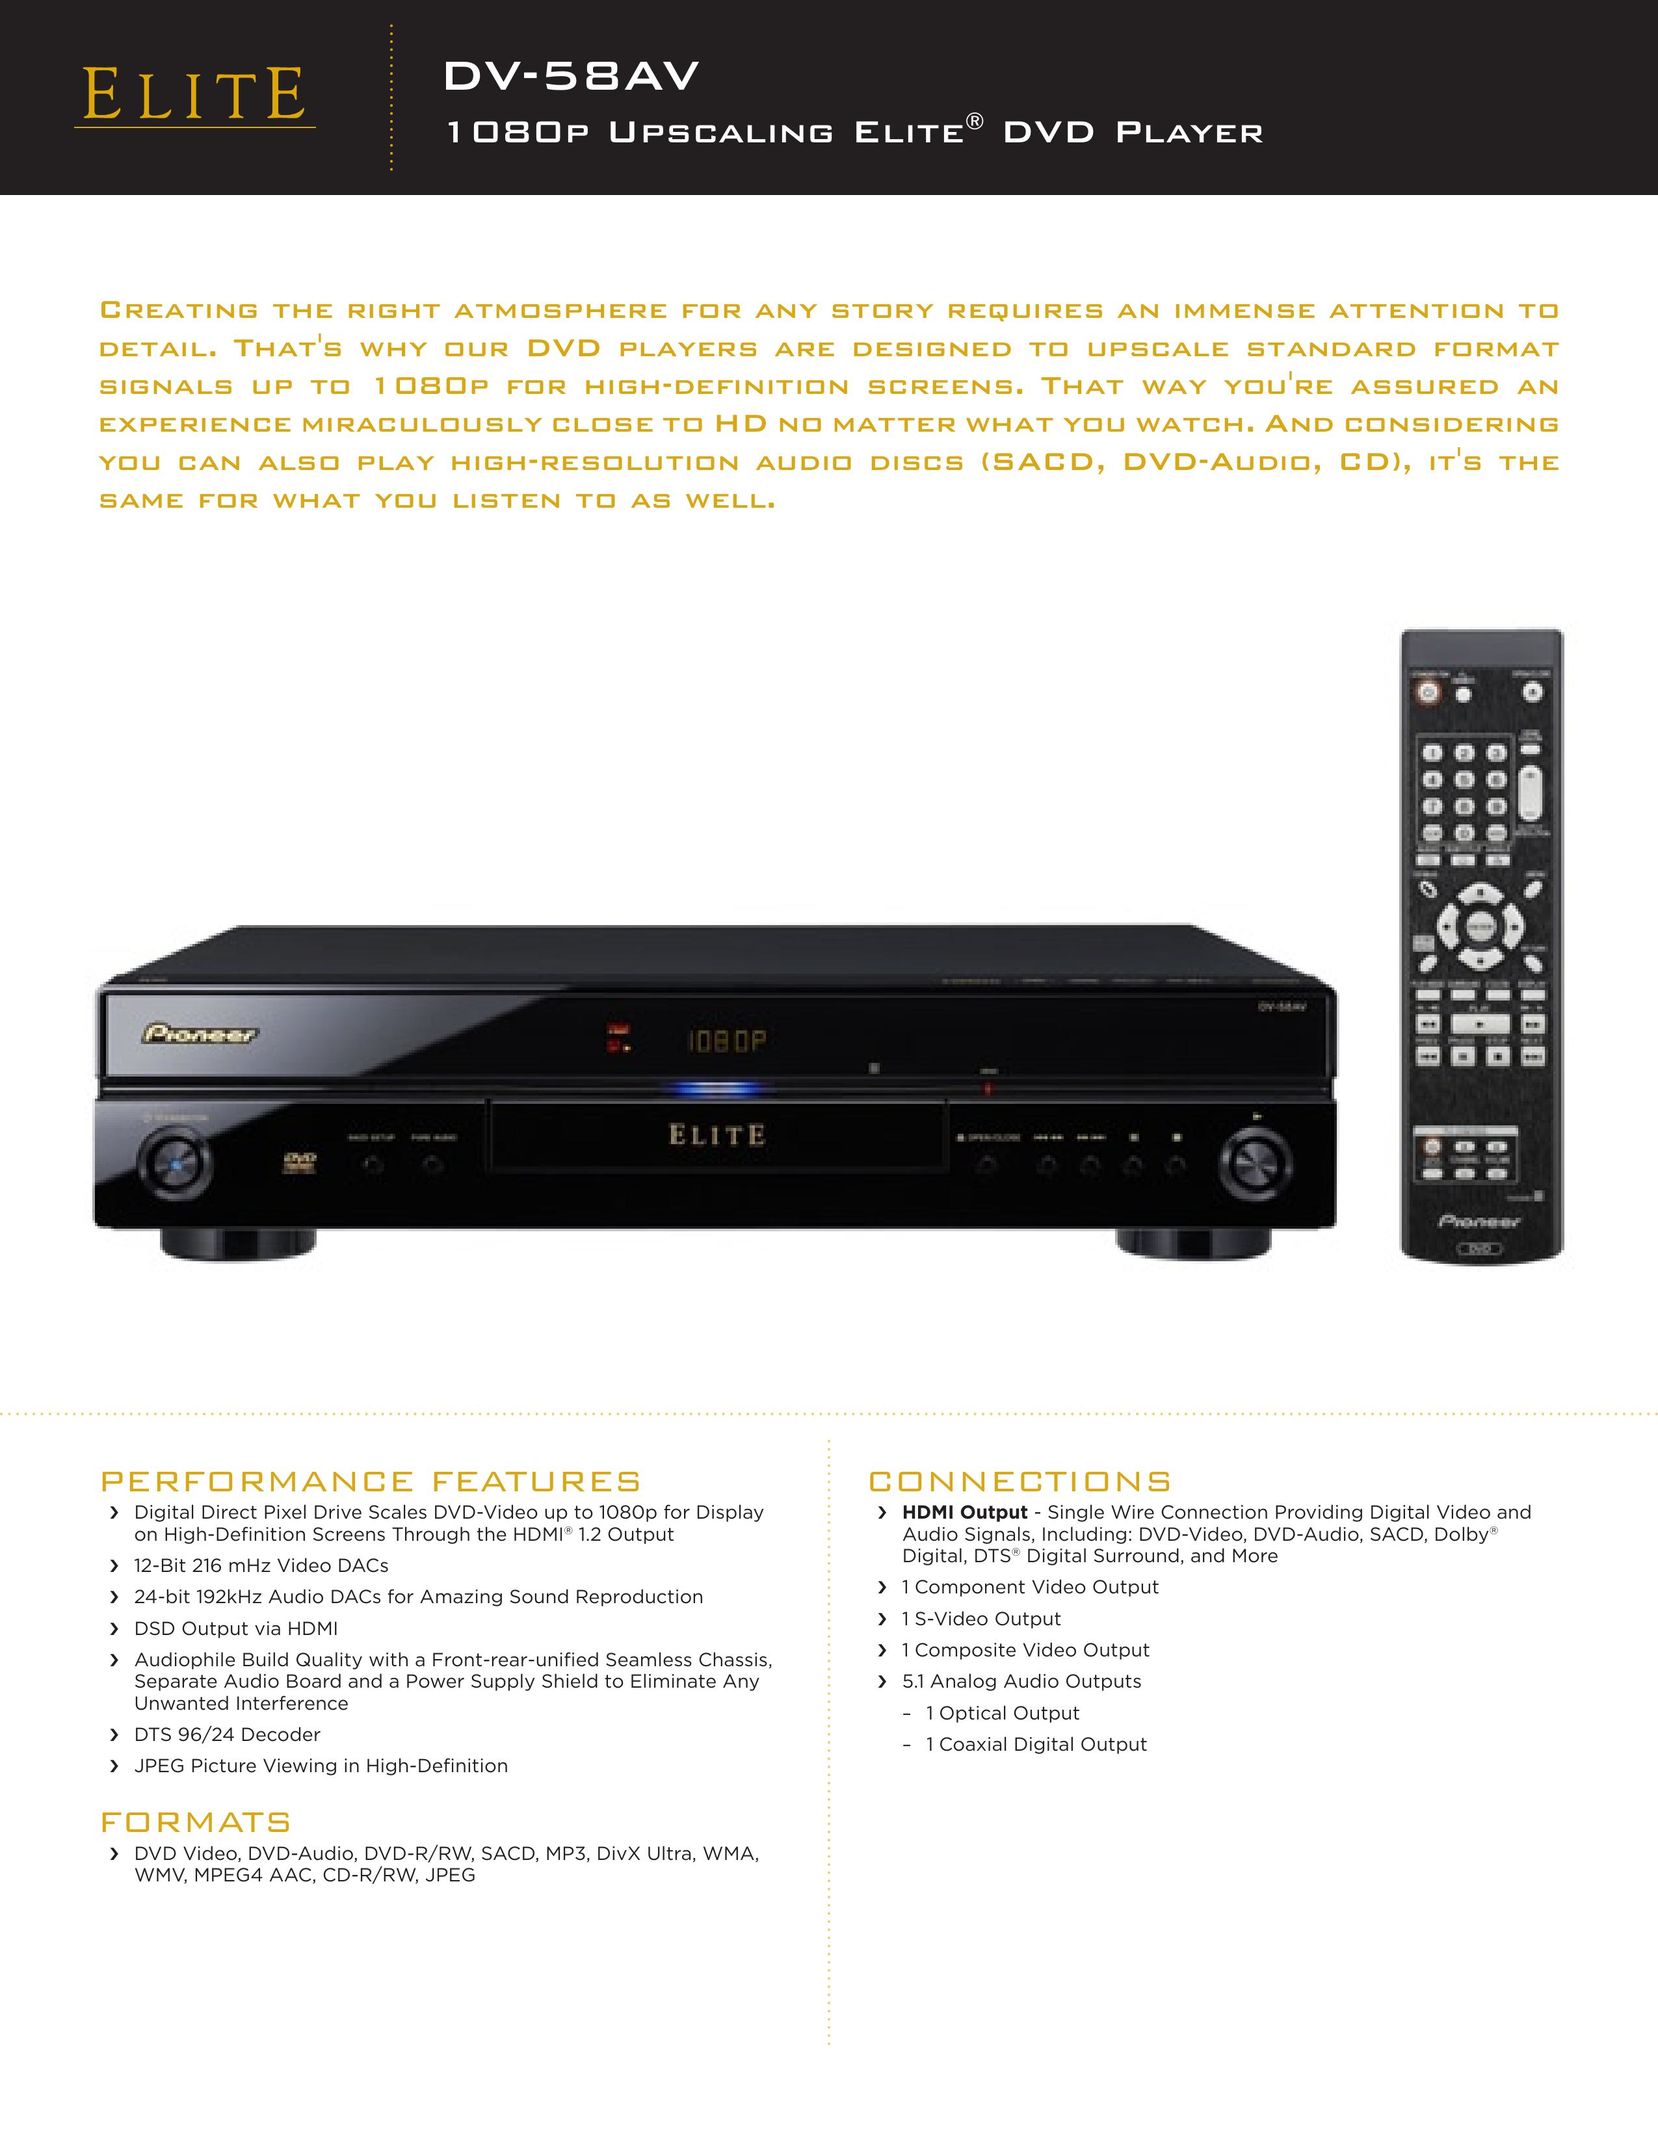 Elite DV-58AV DVD Player User Manual